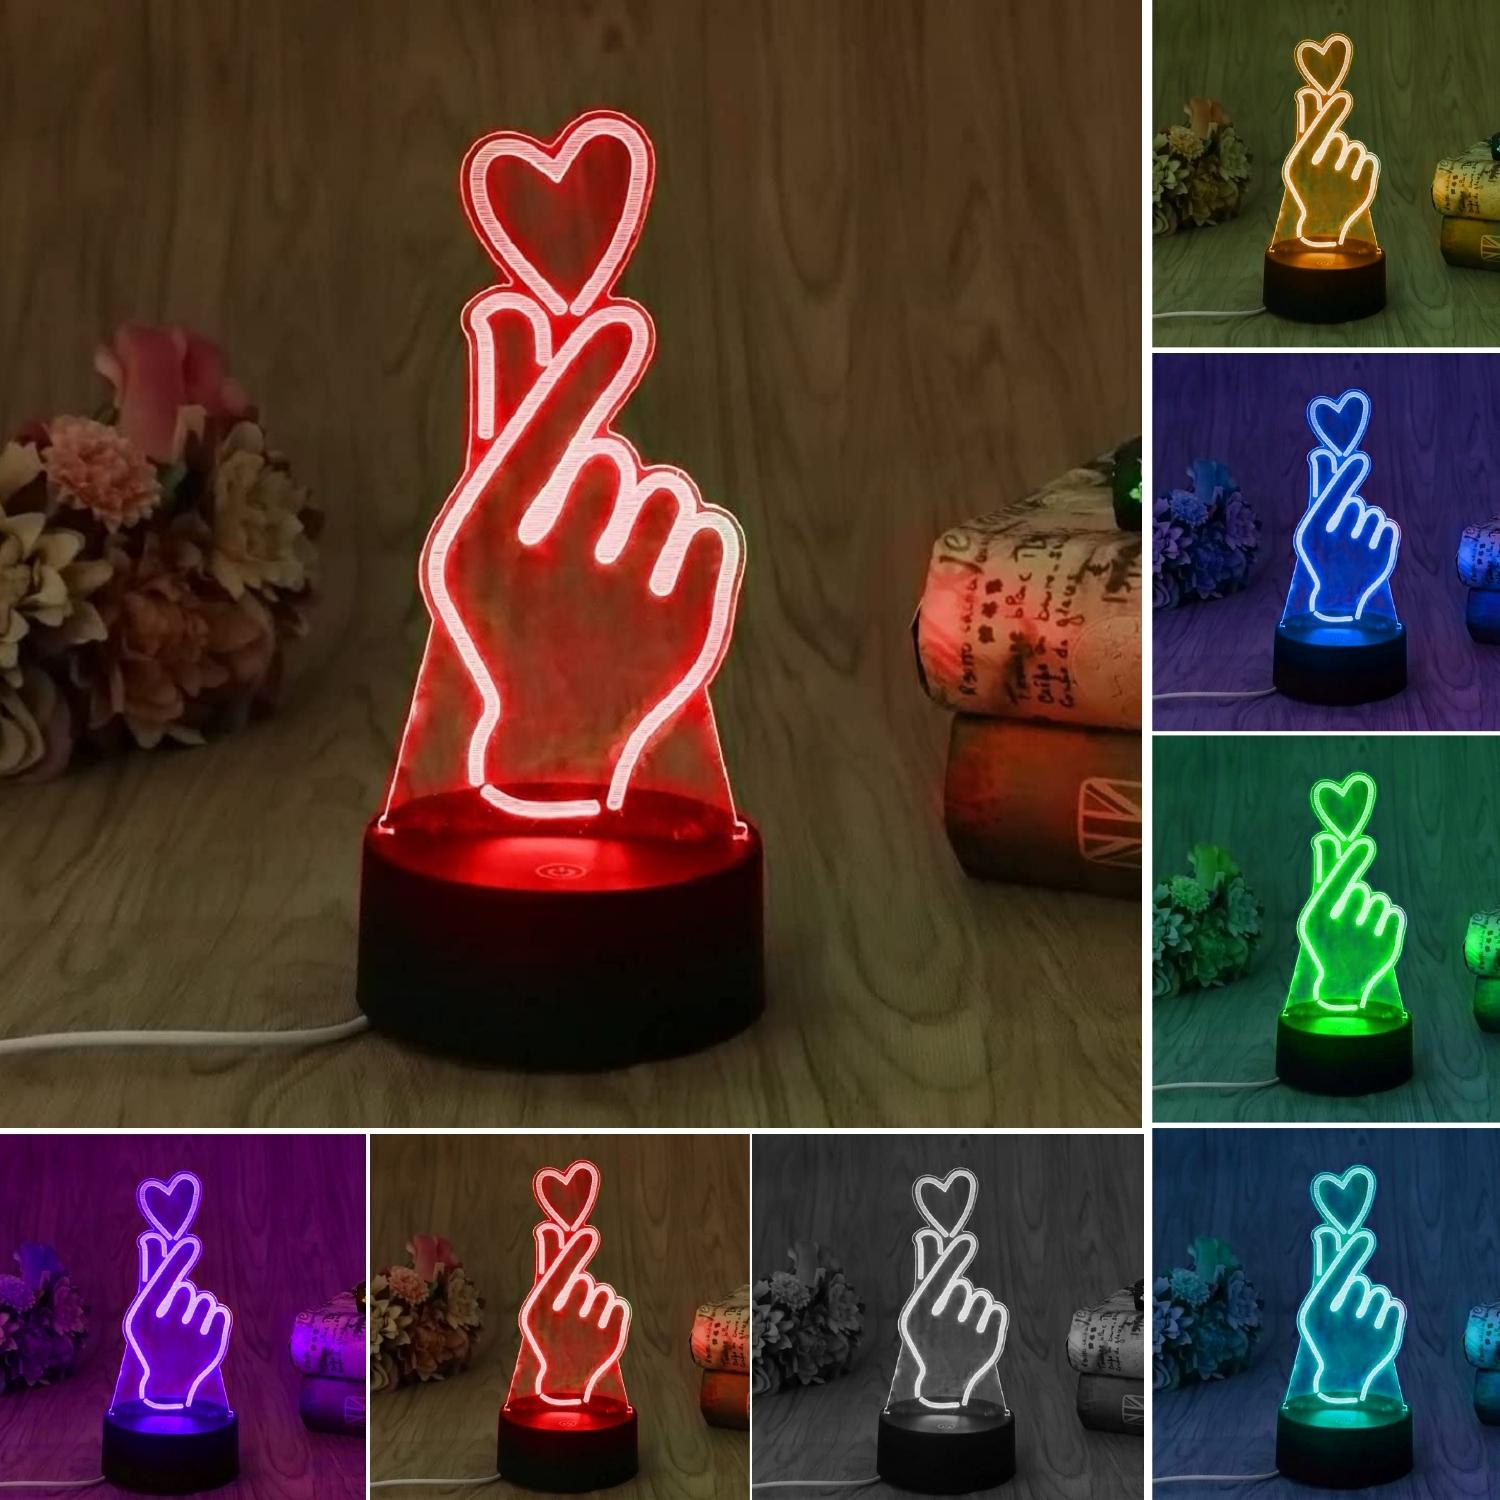 3D Illusion Korean Love Led Lamp 3D Illusion Led lamp- Royalkart - The Urban Store